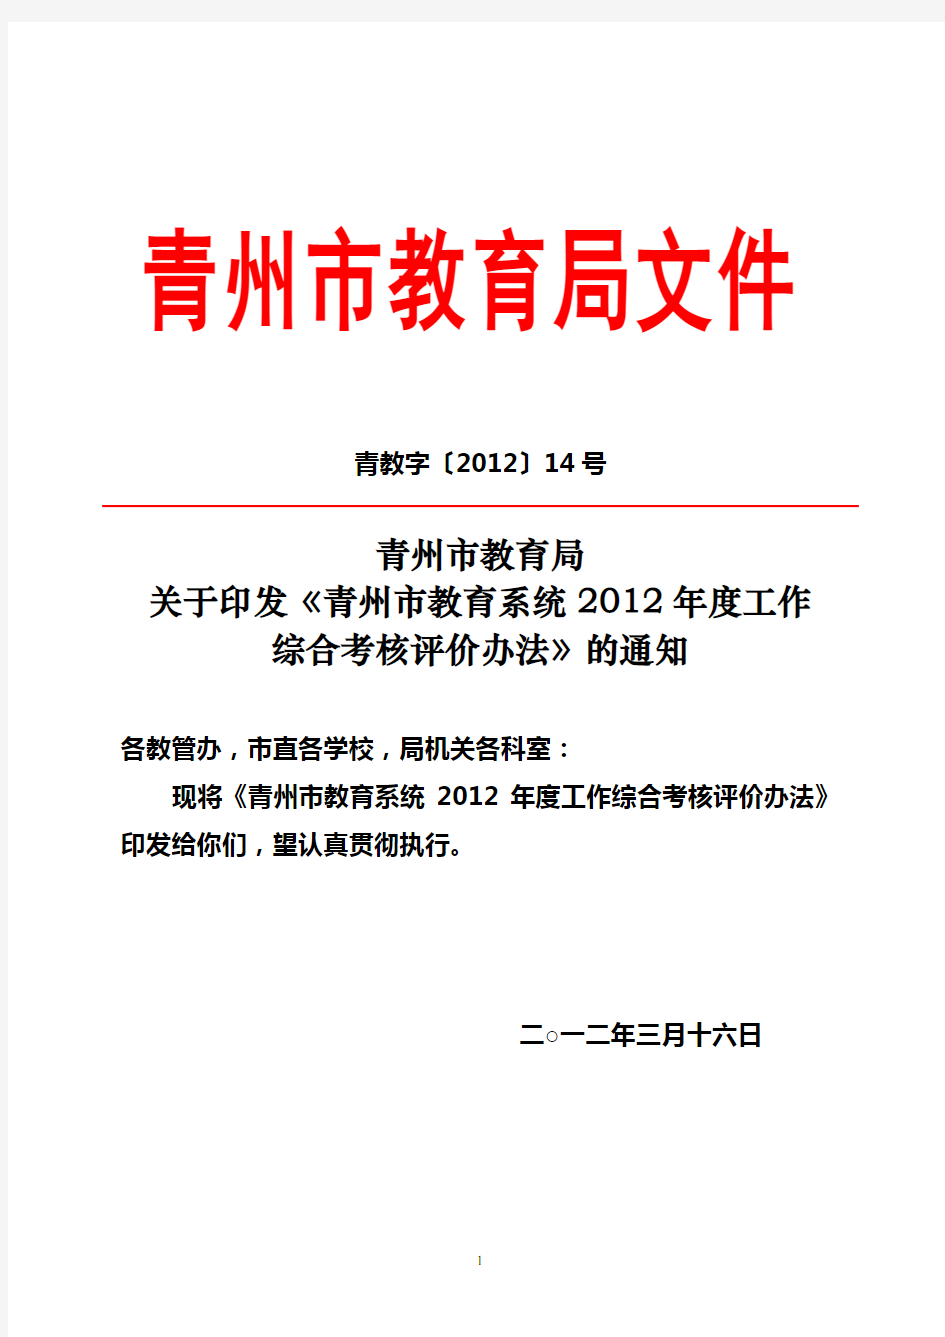 青州市教育系统2012年度综合考核评价办法(定稿)